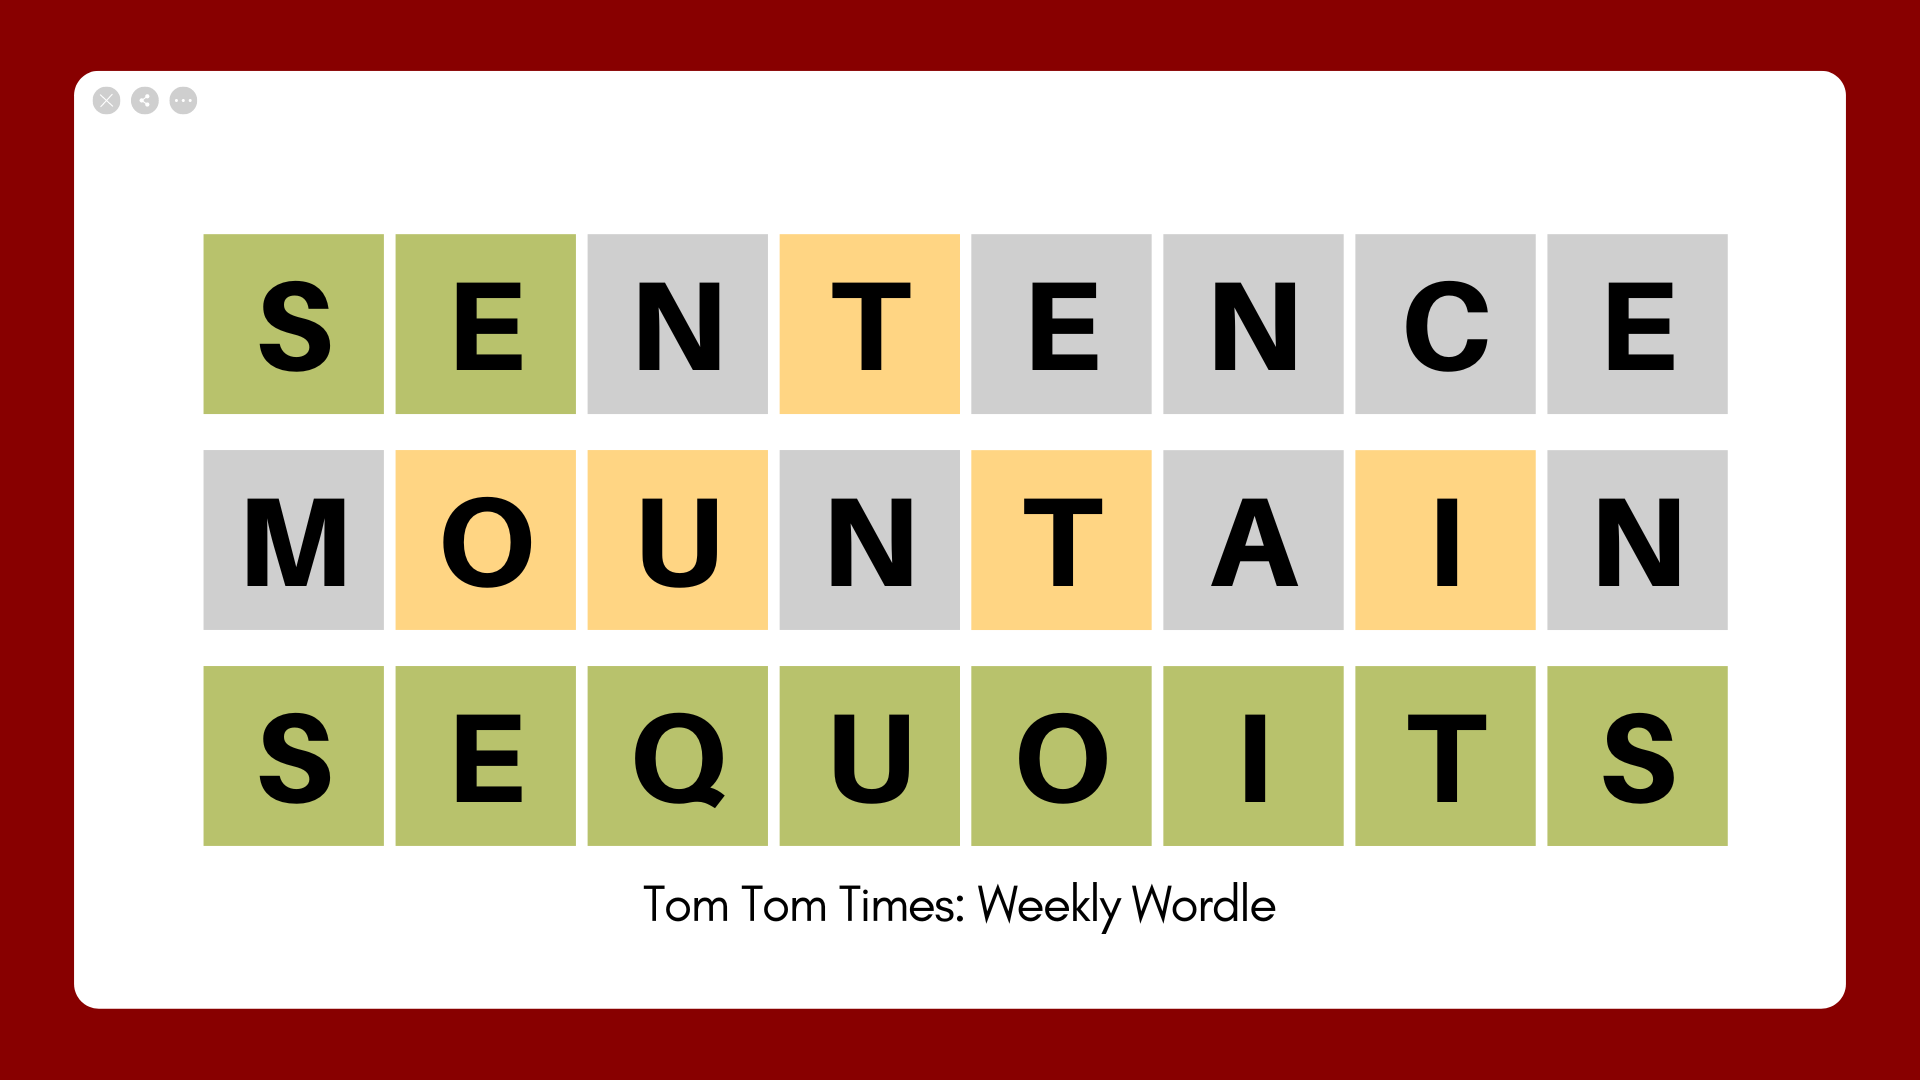 Tom Tom Times: Weekly Wordle 04